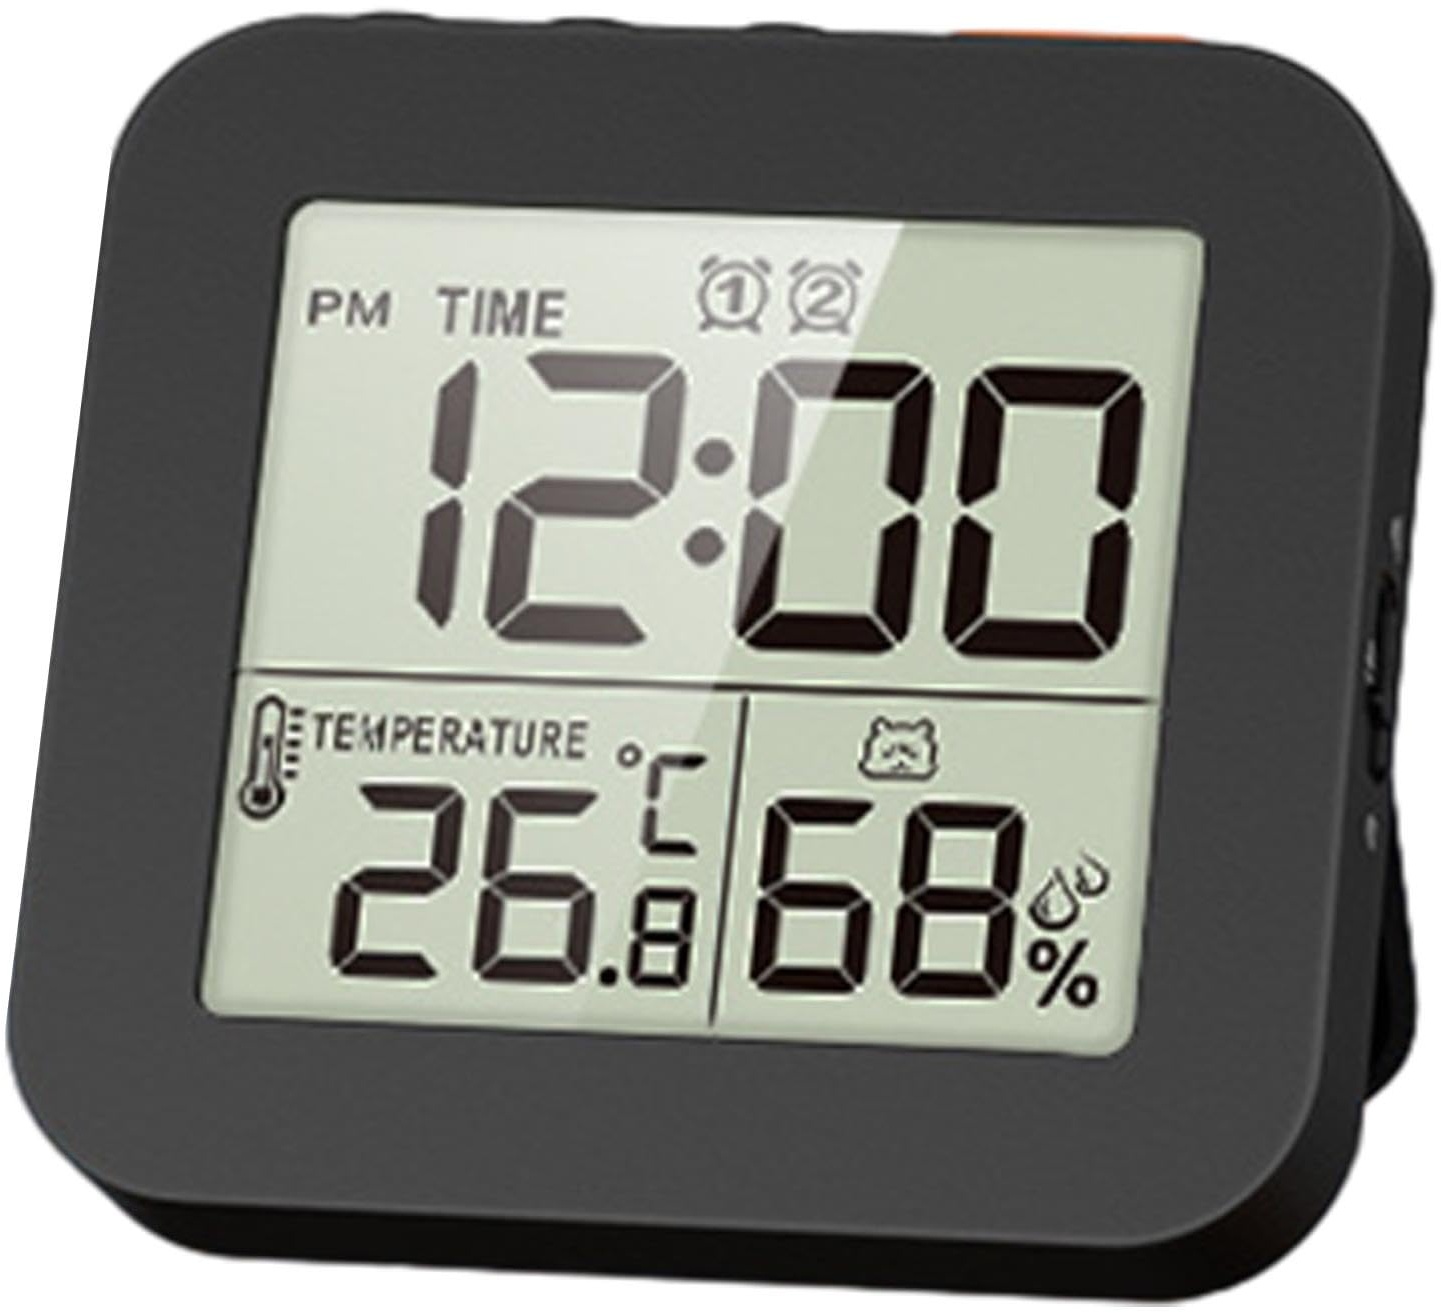 Sharplace Digitale Badezimmeruhr, Dusch-Timer mit Alarm, wasserdichte Uhren für Badezimmer, Küchen-Timer-Uhren, Thermometer-Hygrometer-Wanduhr, Schwarz